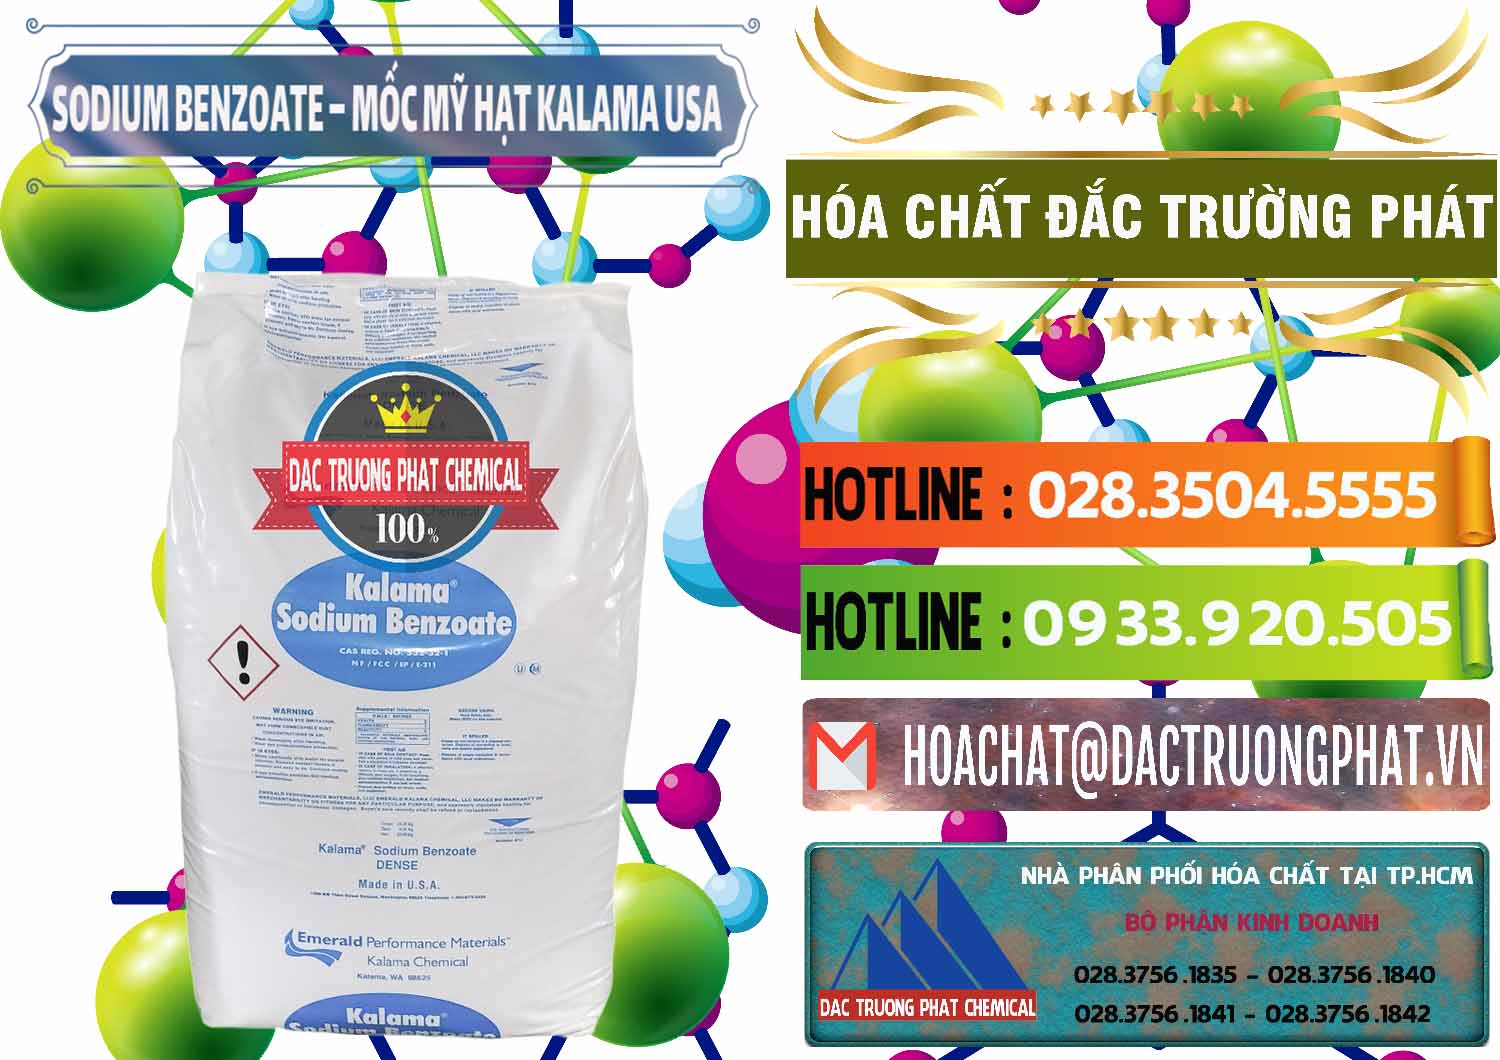 Chuyên bán _ cung cấp Sodium Benzoate - Mốc Hạt Kalama Food Grade Mỹ Usa - 0137 - Chuyên cung cấp _ nhập khẩu hóa chất tại TP.HCM - cungcaphoachat.com.vn